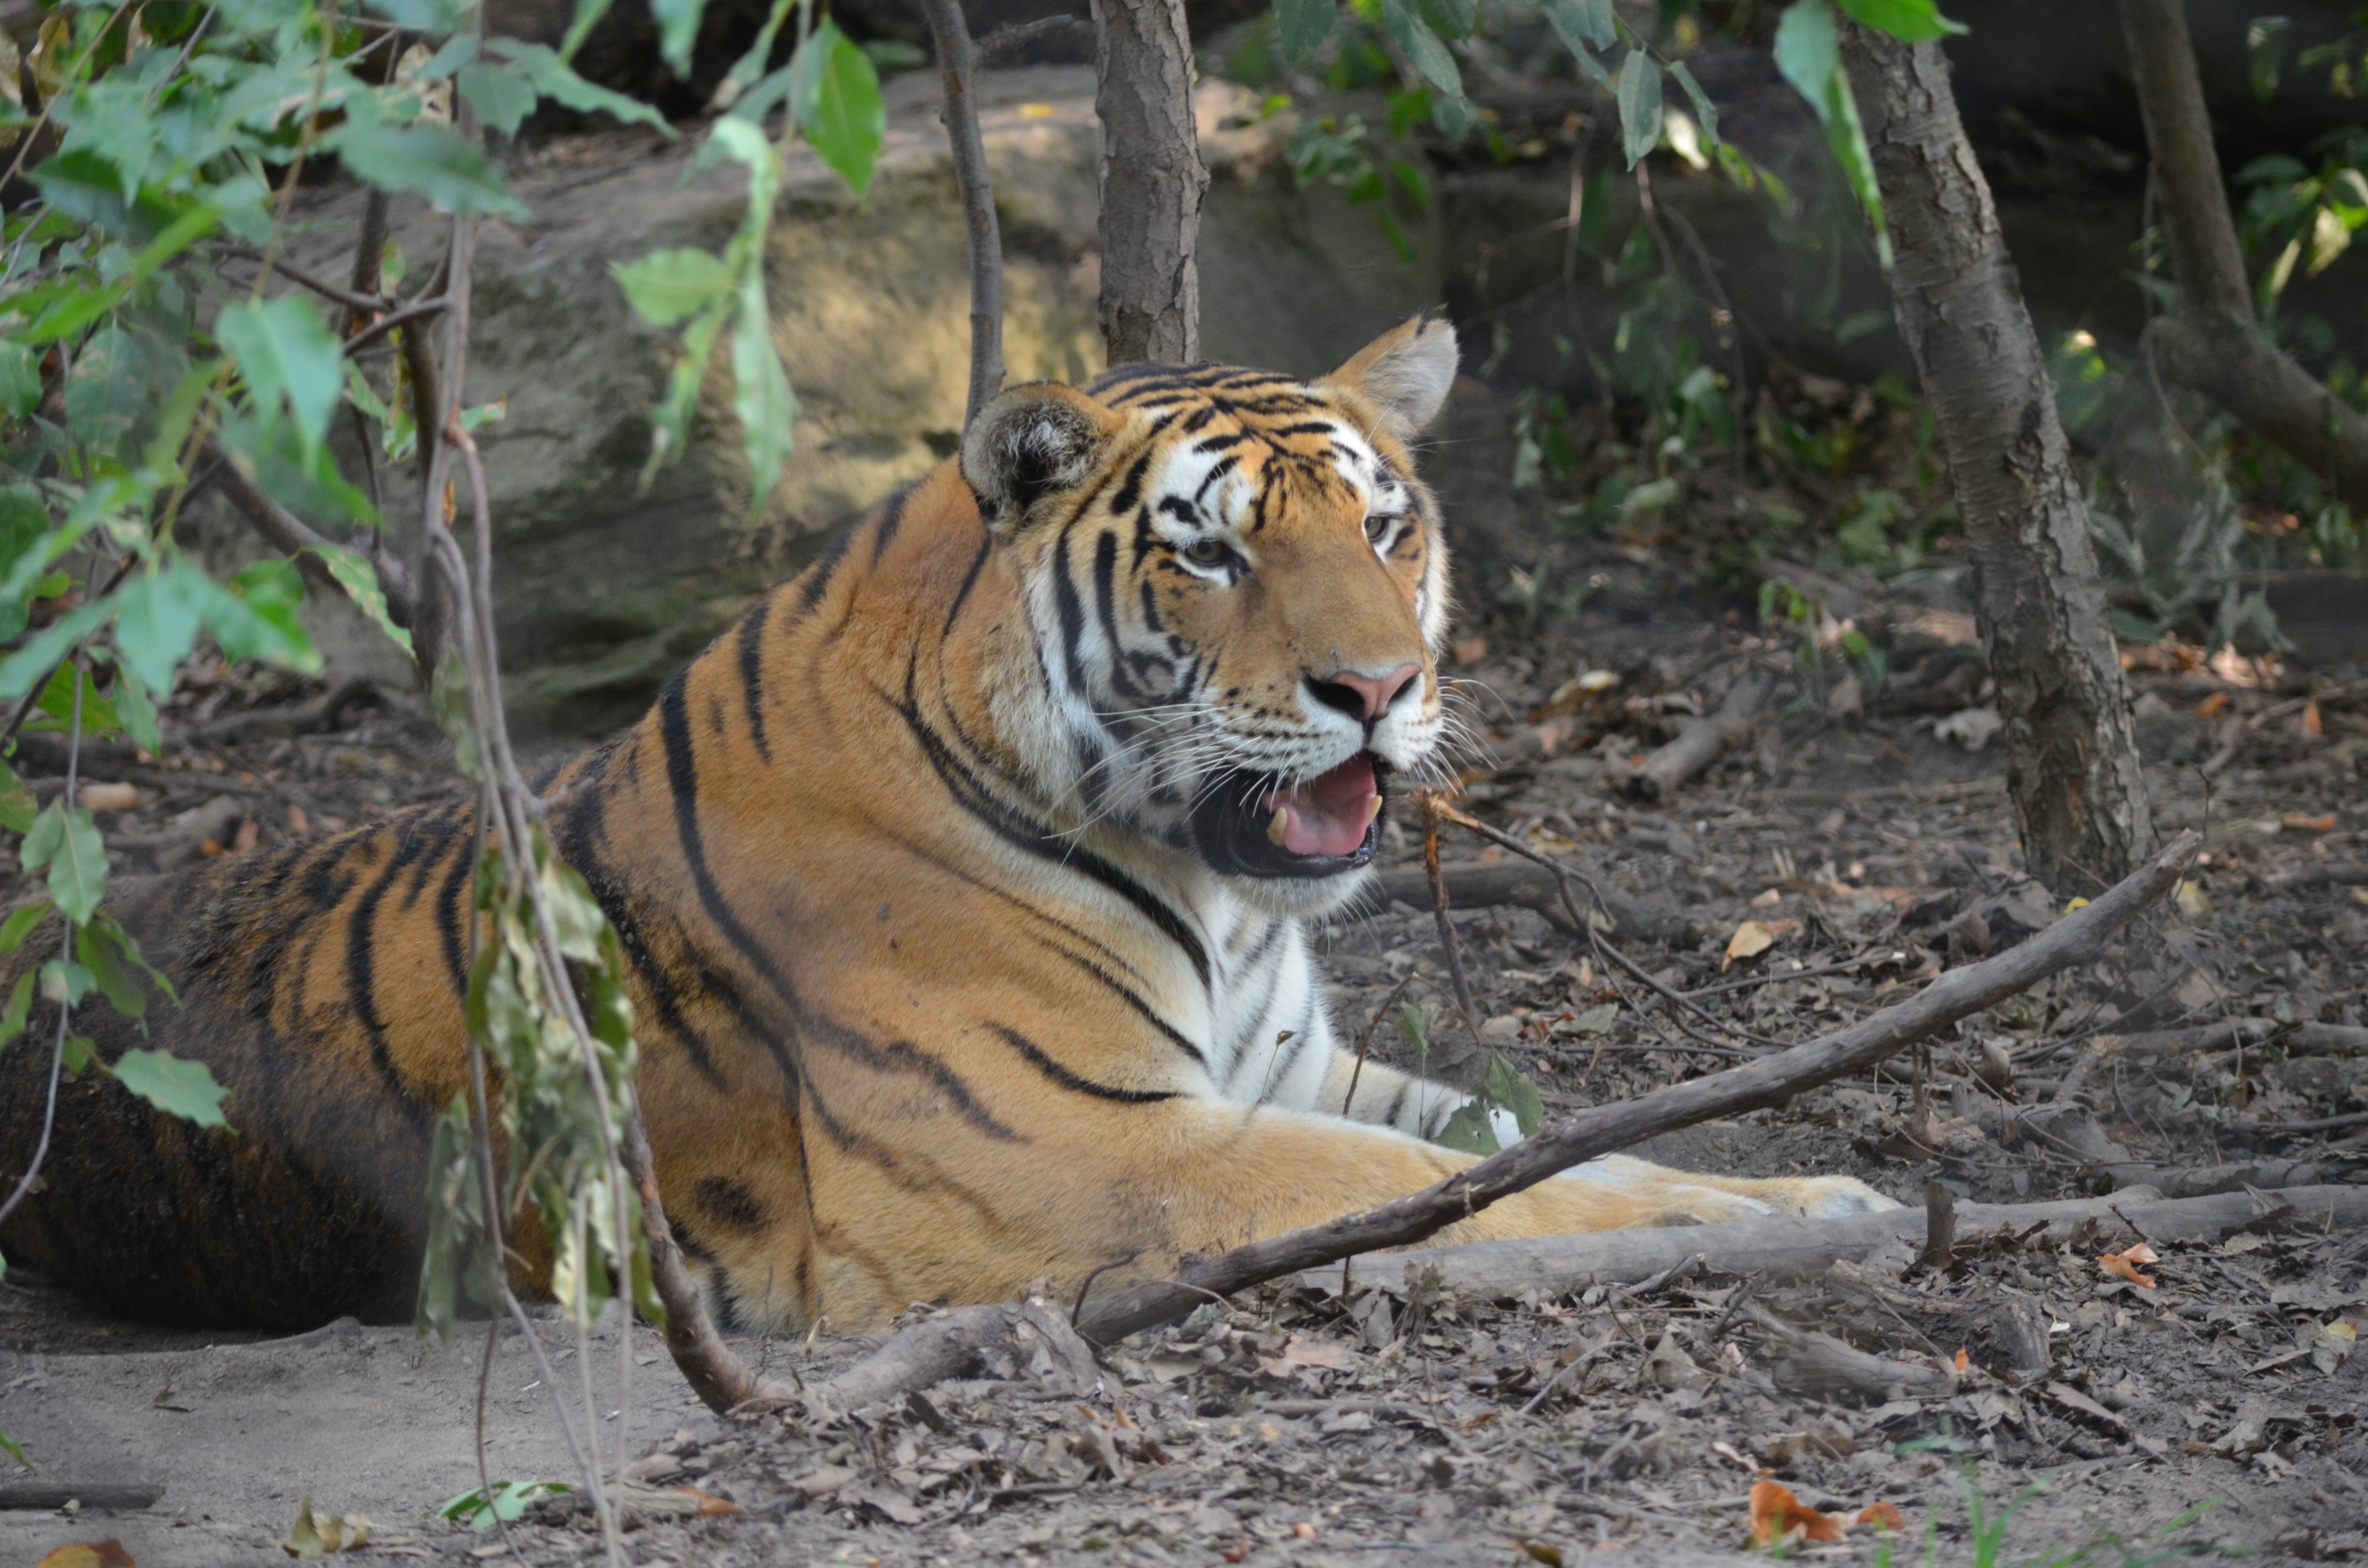 Tiger at John Ball Zoo